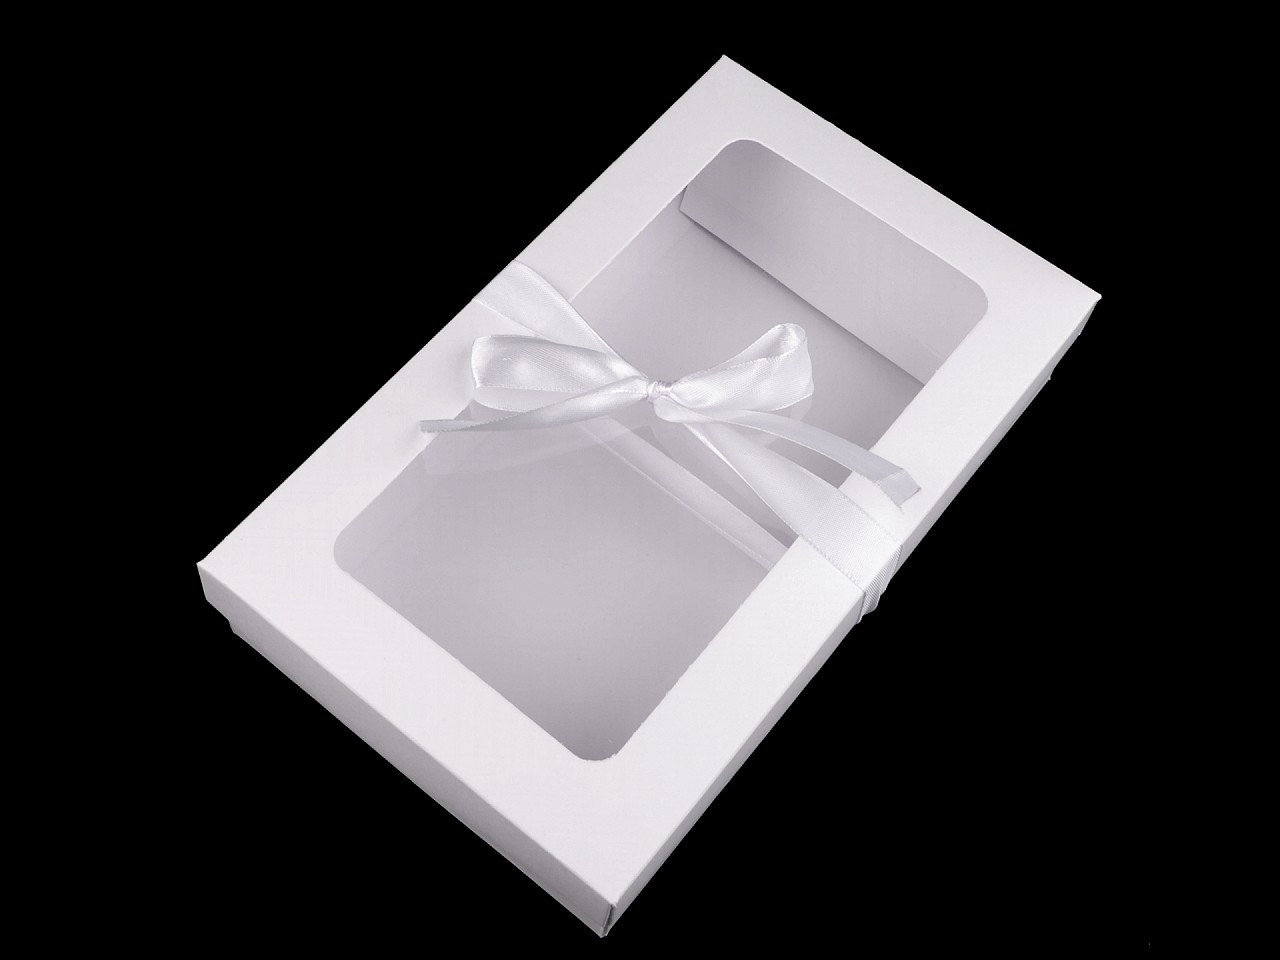 Papírová krabička s průhledem a stuhou, barva bílá